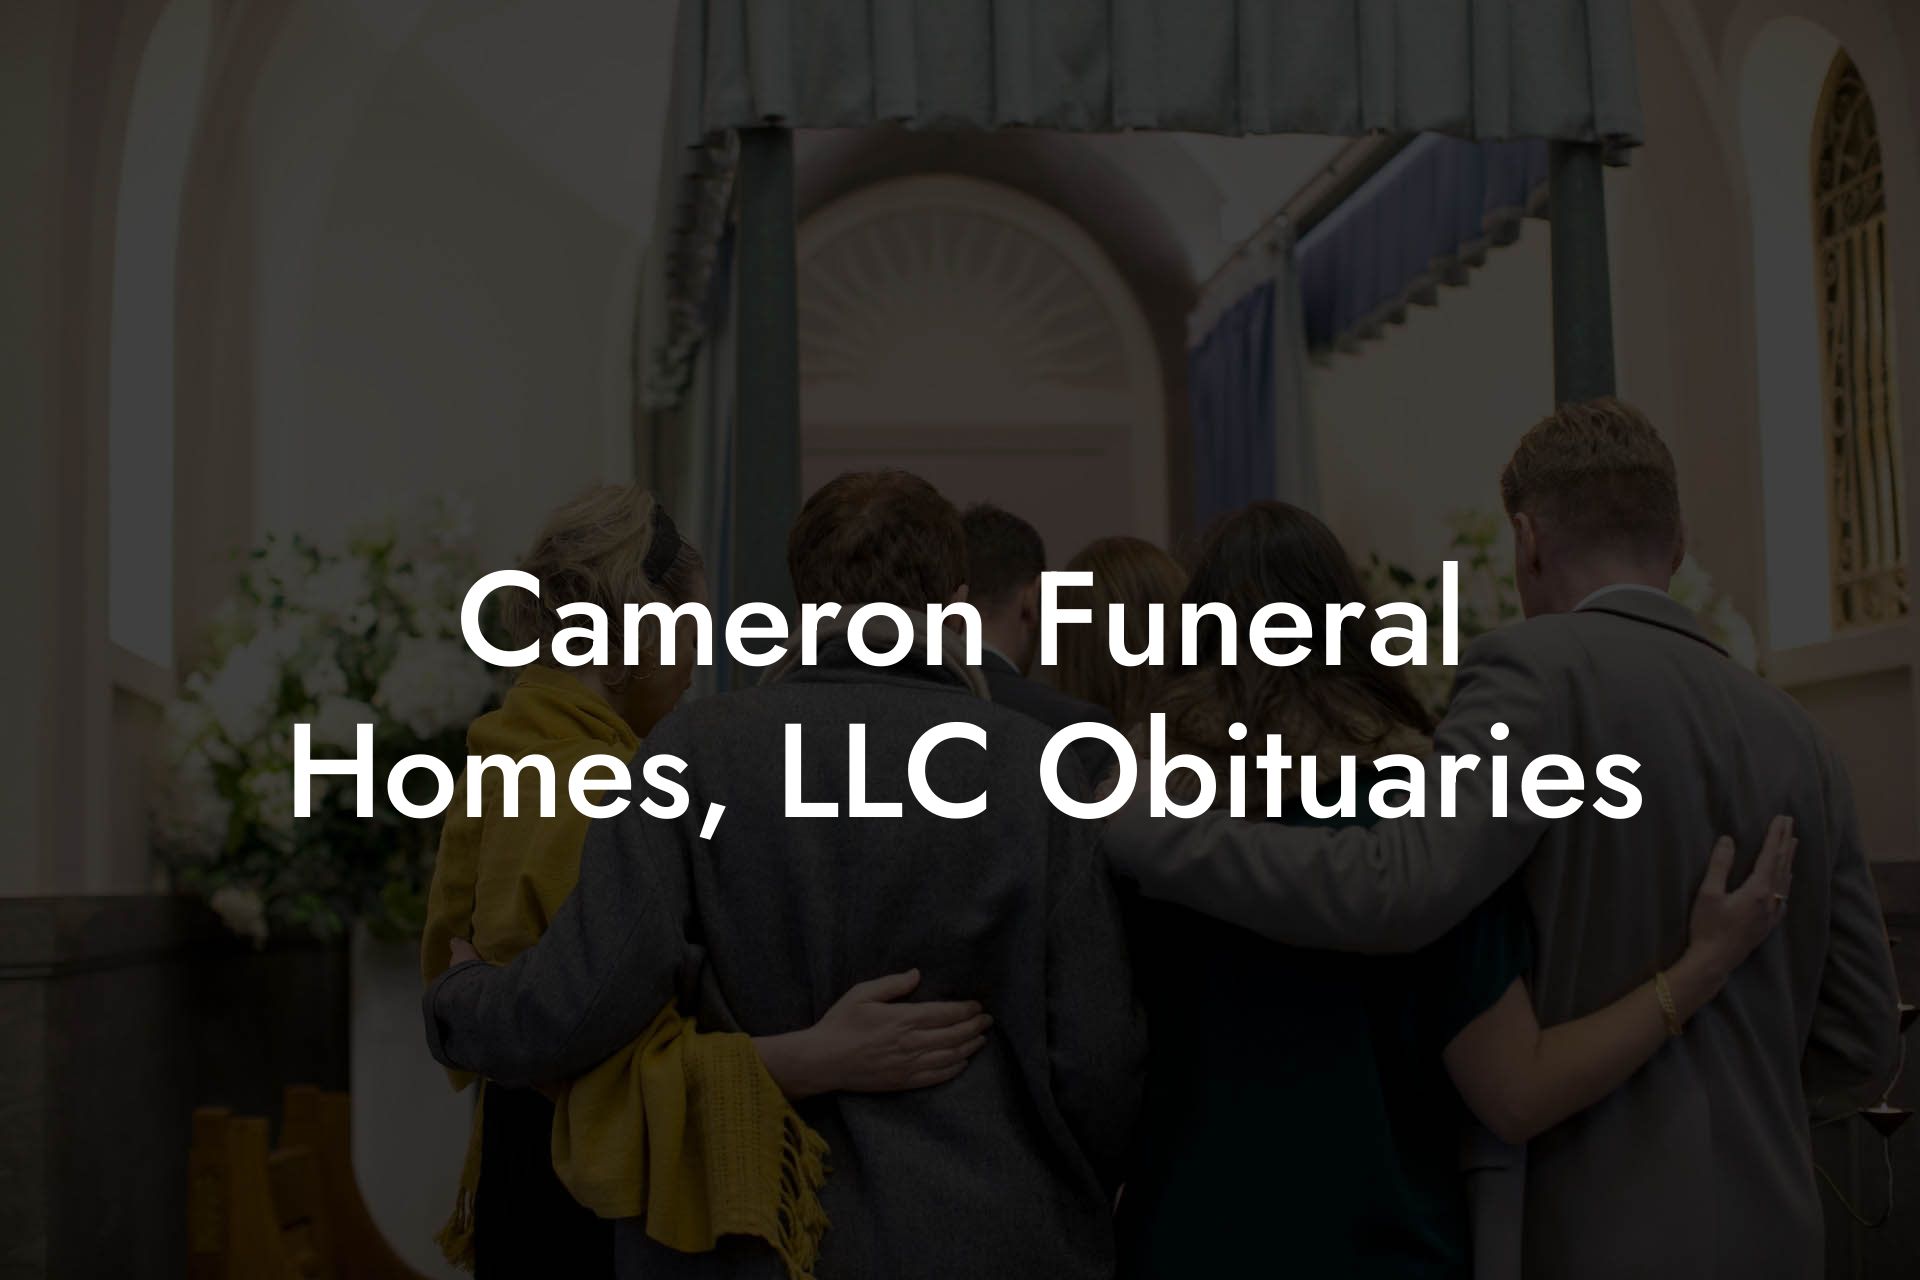 Cameron Funeral Homes, LLC Obituaries